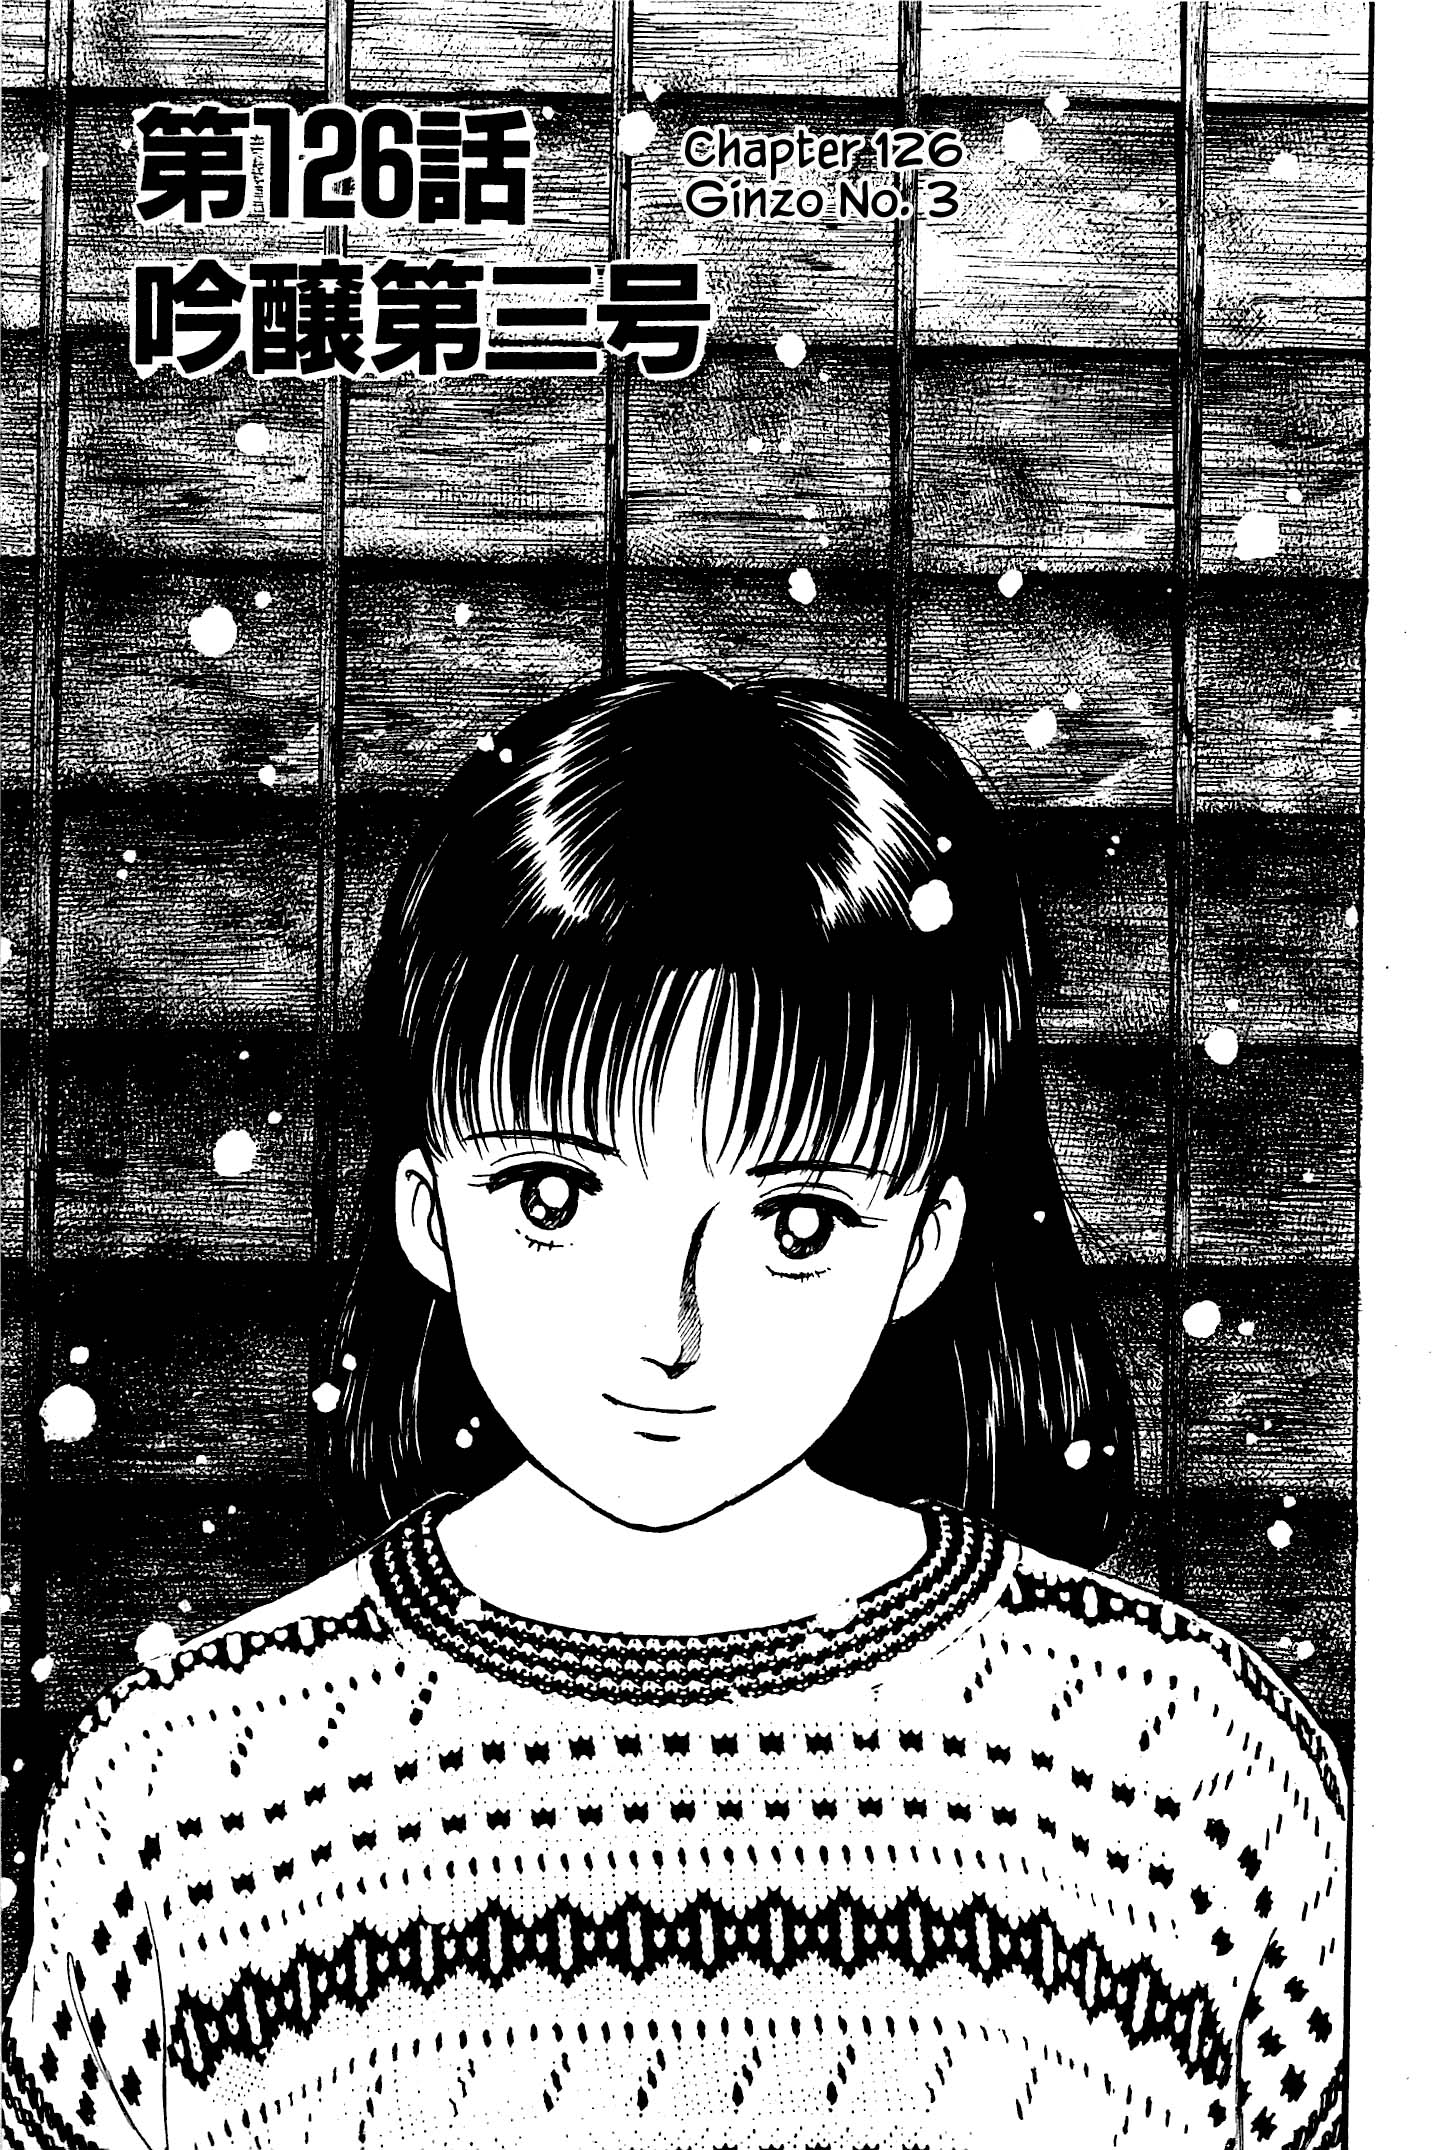 Natsuko's Sake - chapter 126 - #1